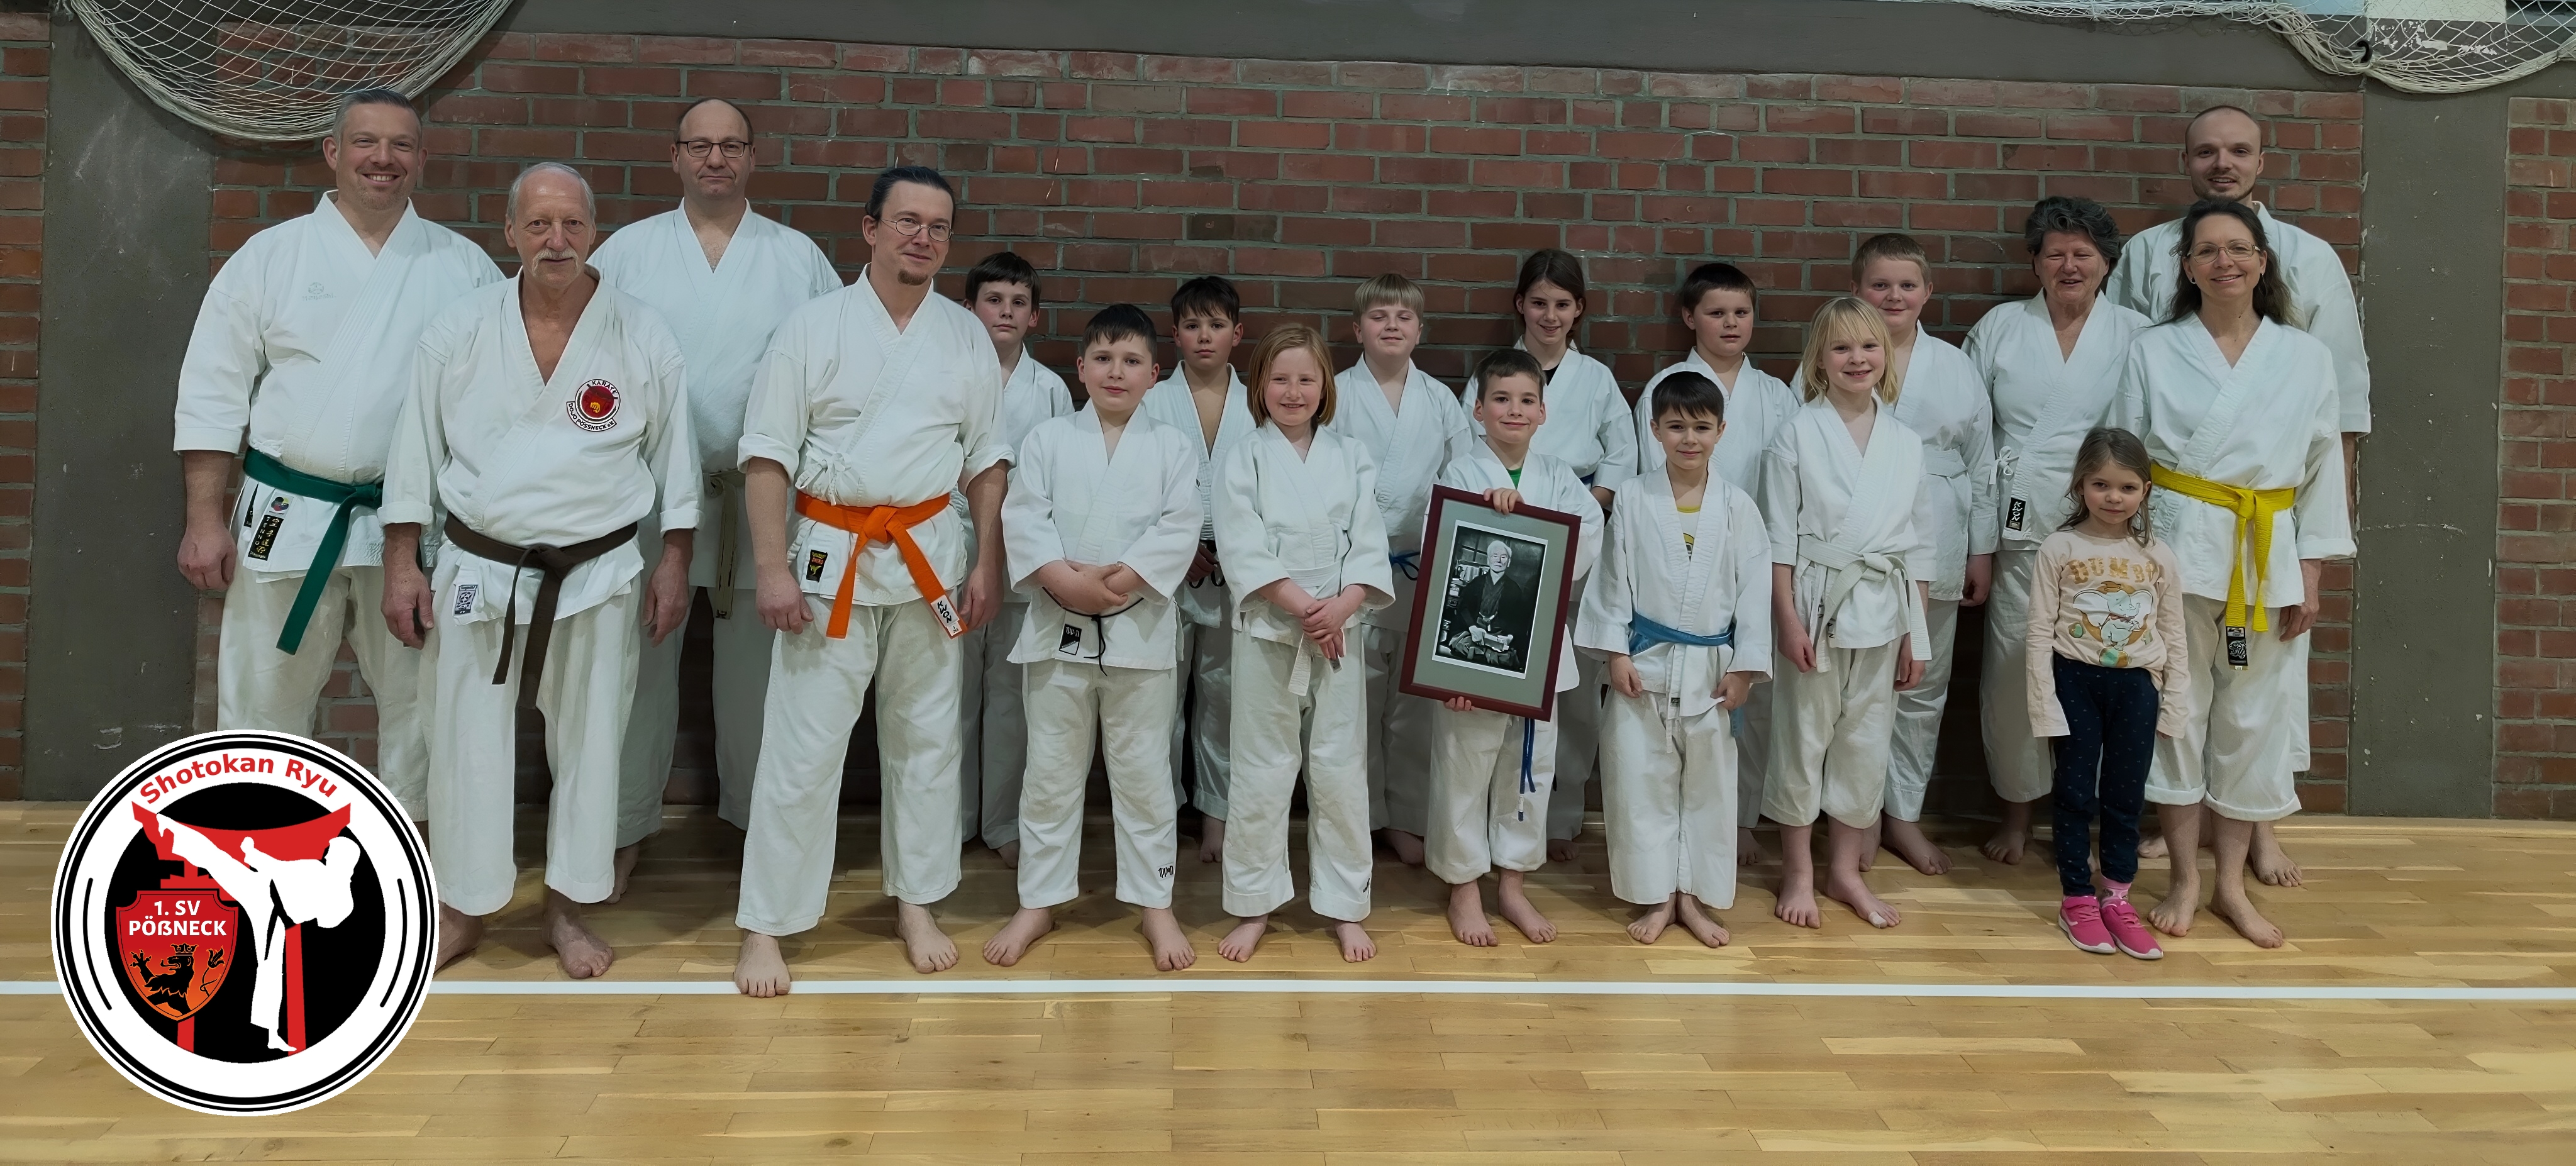 1. SV Pößneck - Abteilung Karate